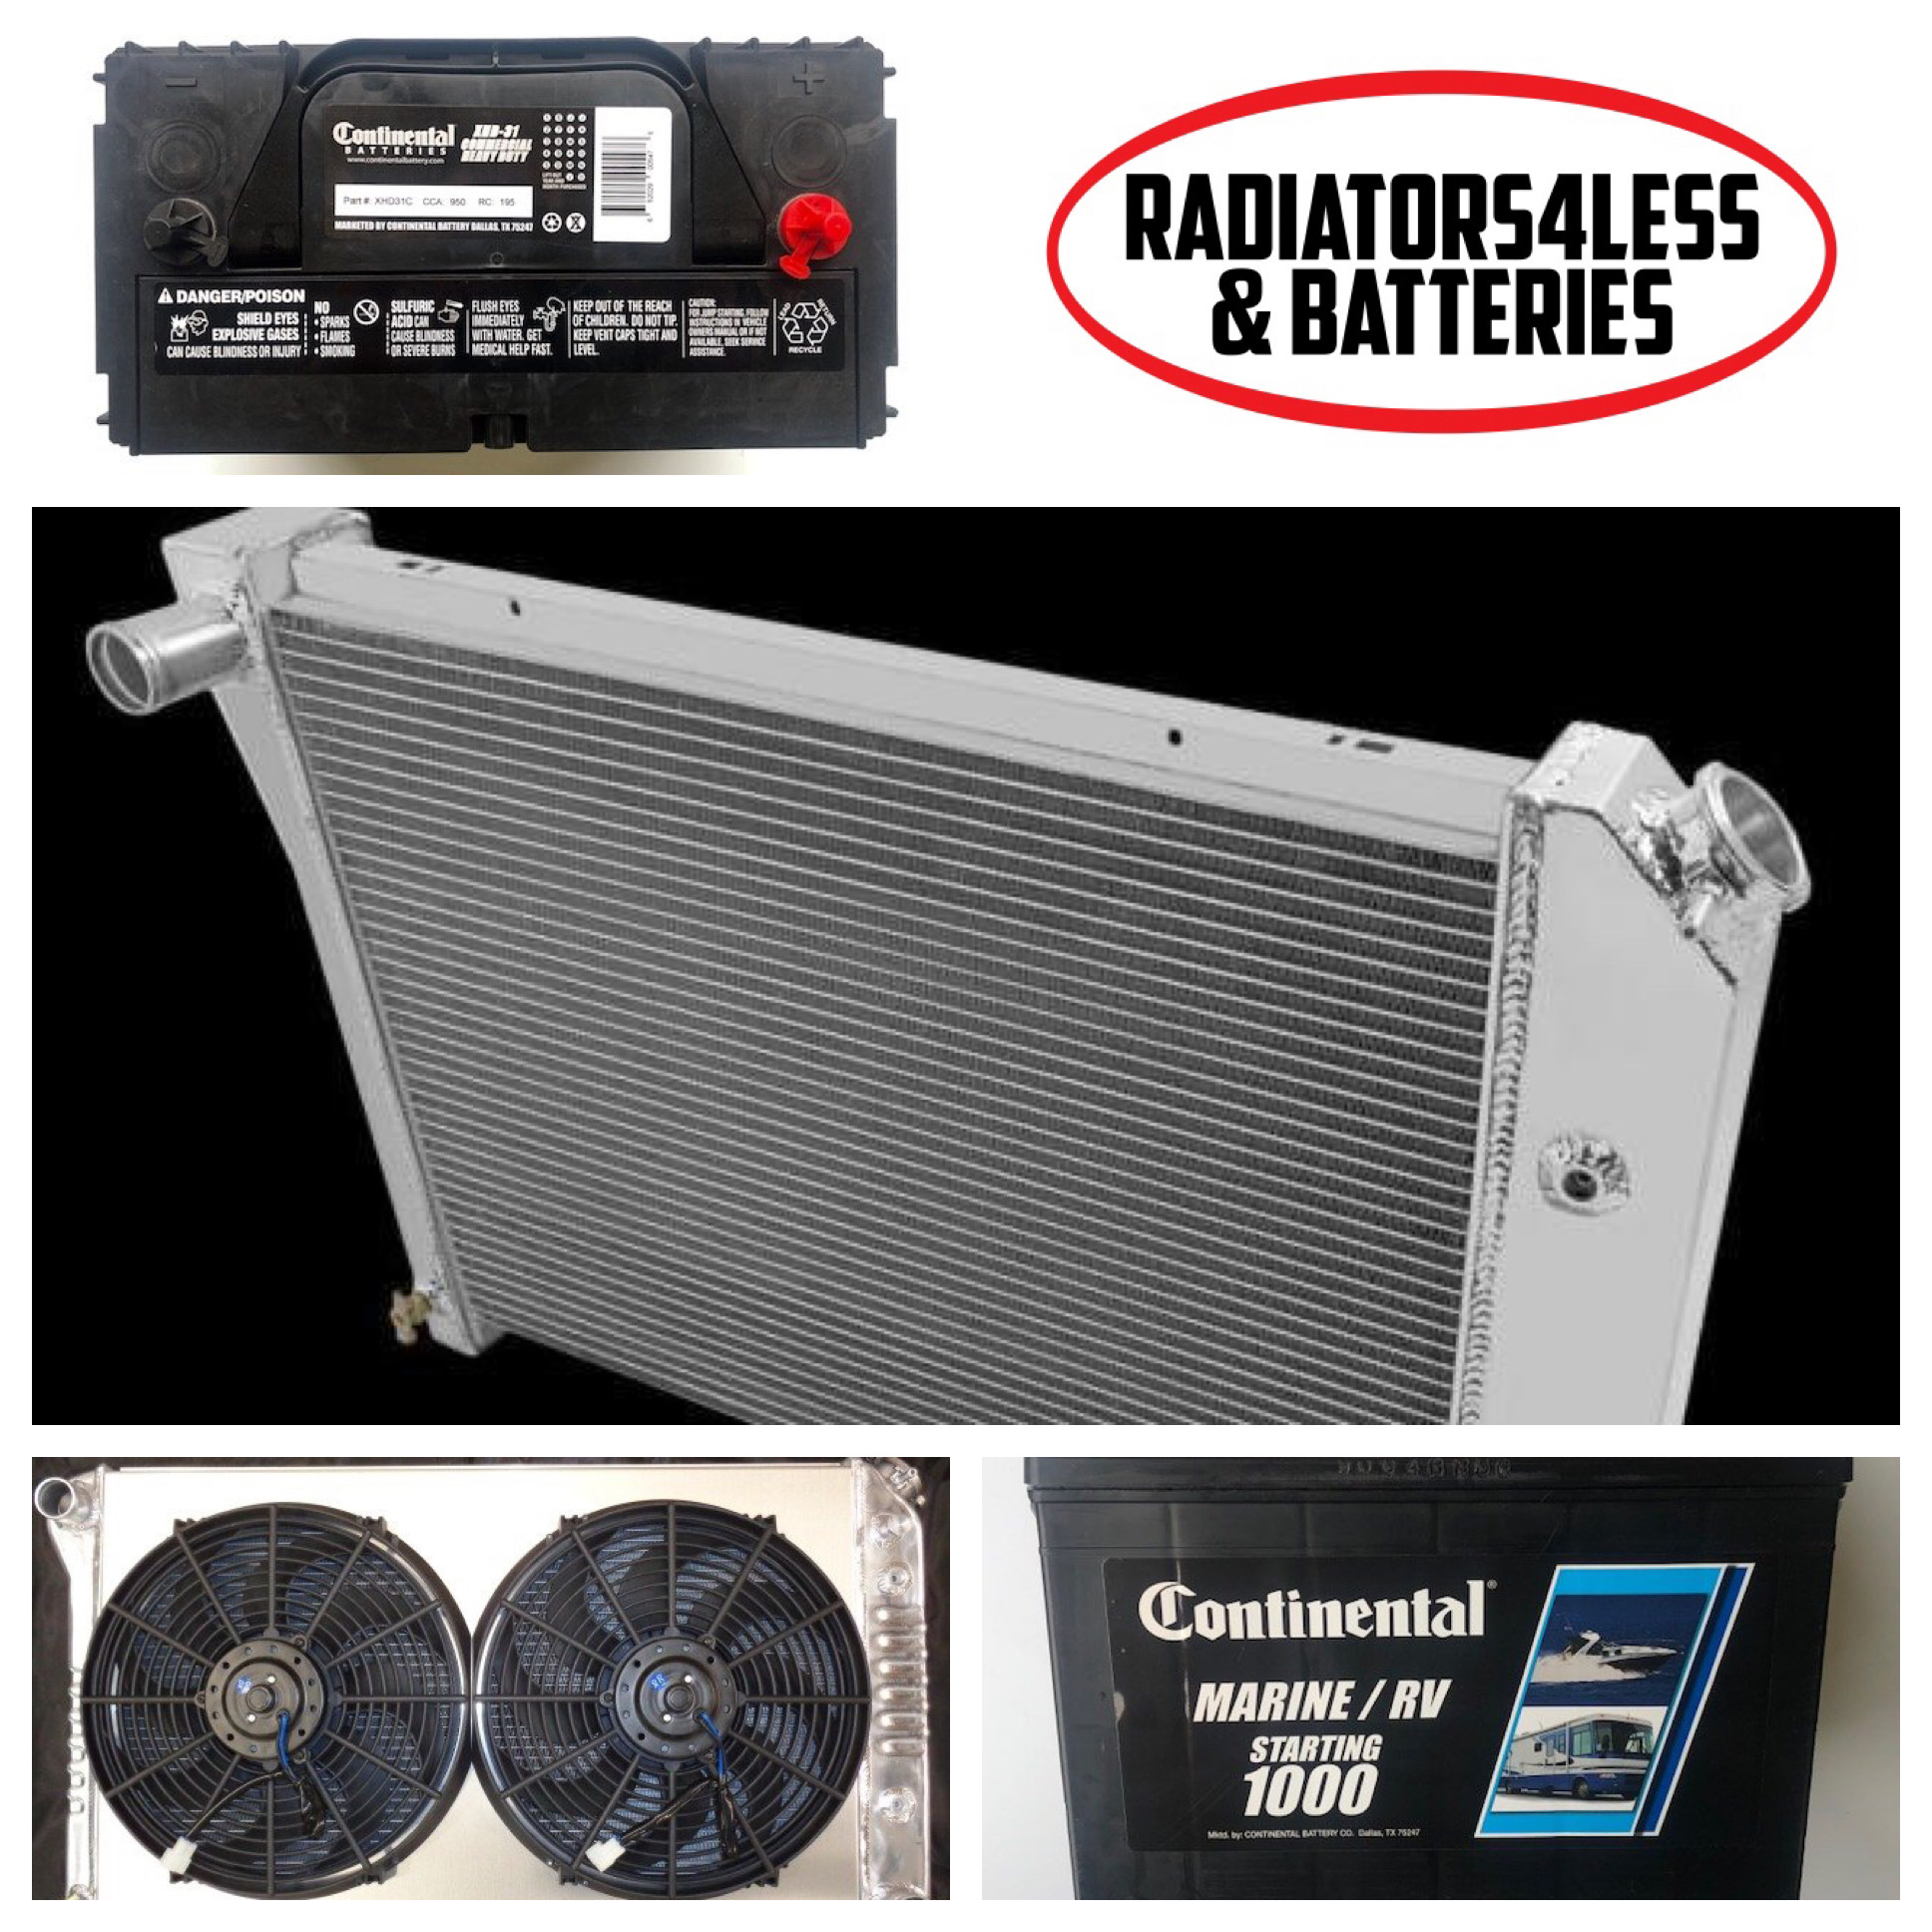 Radiators4Less & Batteries